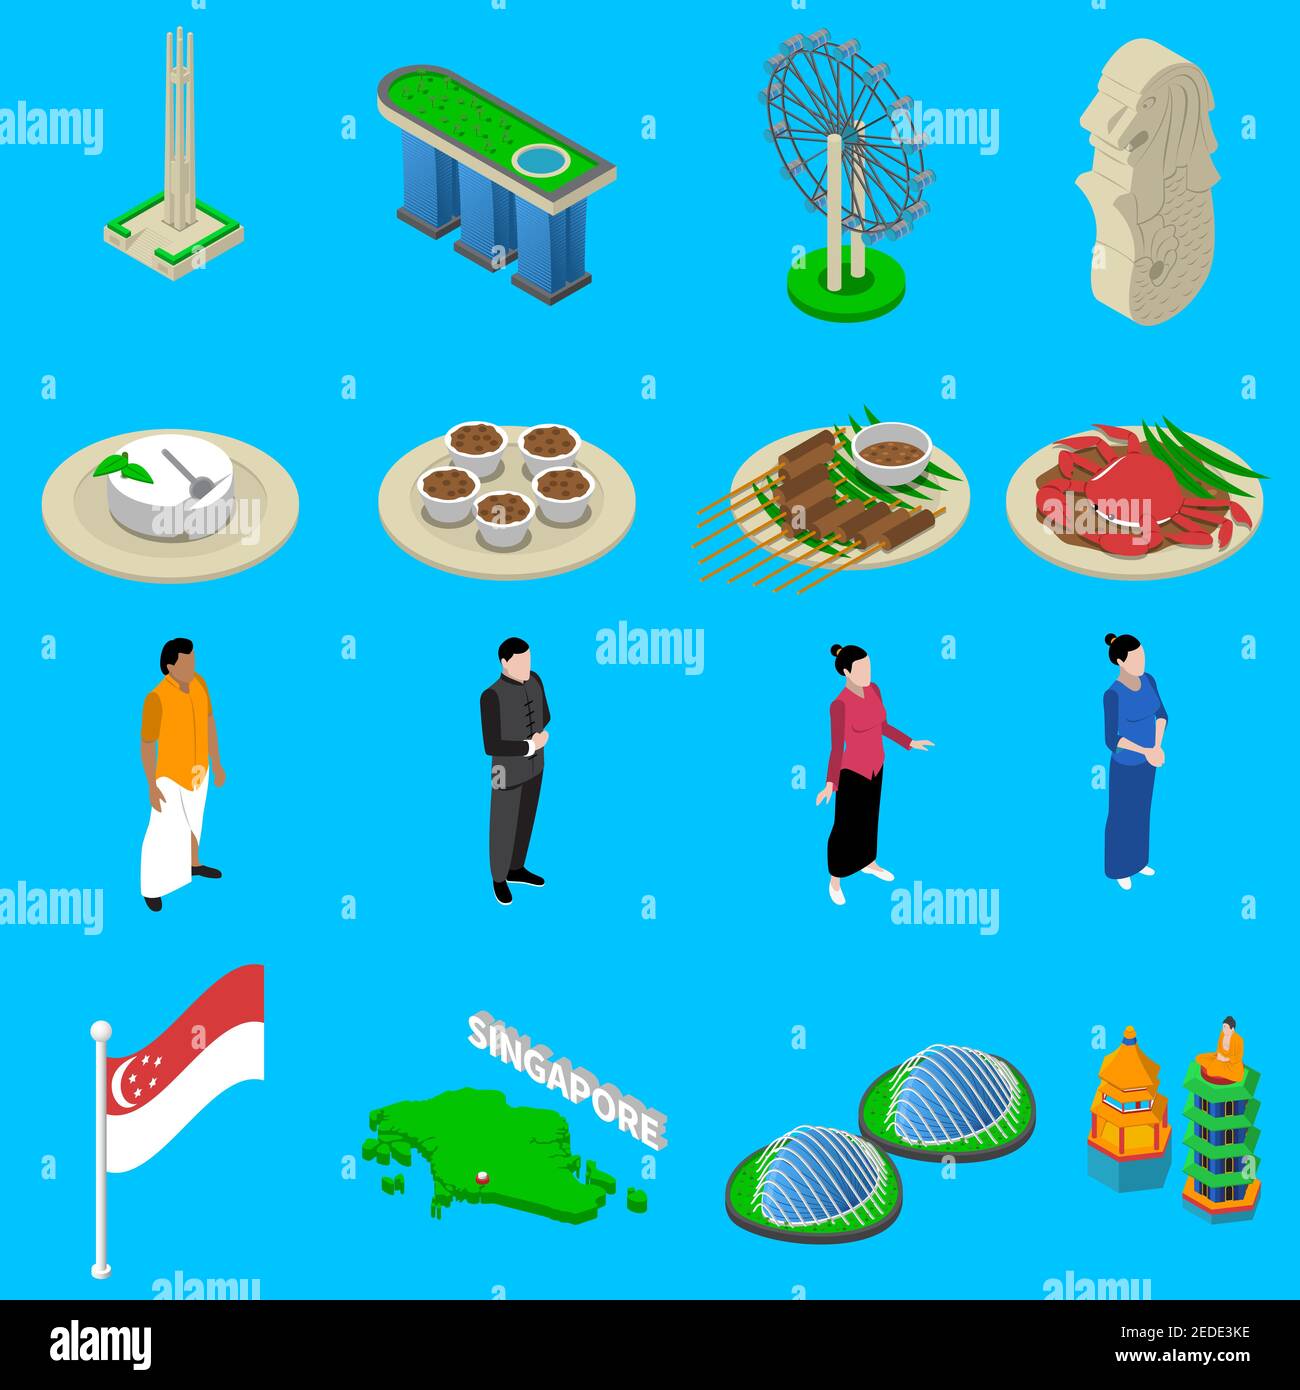 Les attractions touristiques de Singapour avec des symboles culturels et de la nourriture drapeau national les icônes isométriques définissent l'illustration abstraite isolée du vecteur Illustration de Vecteur